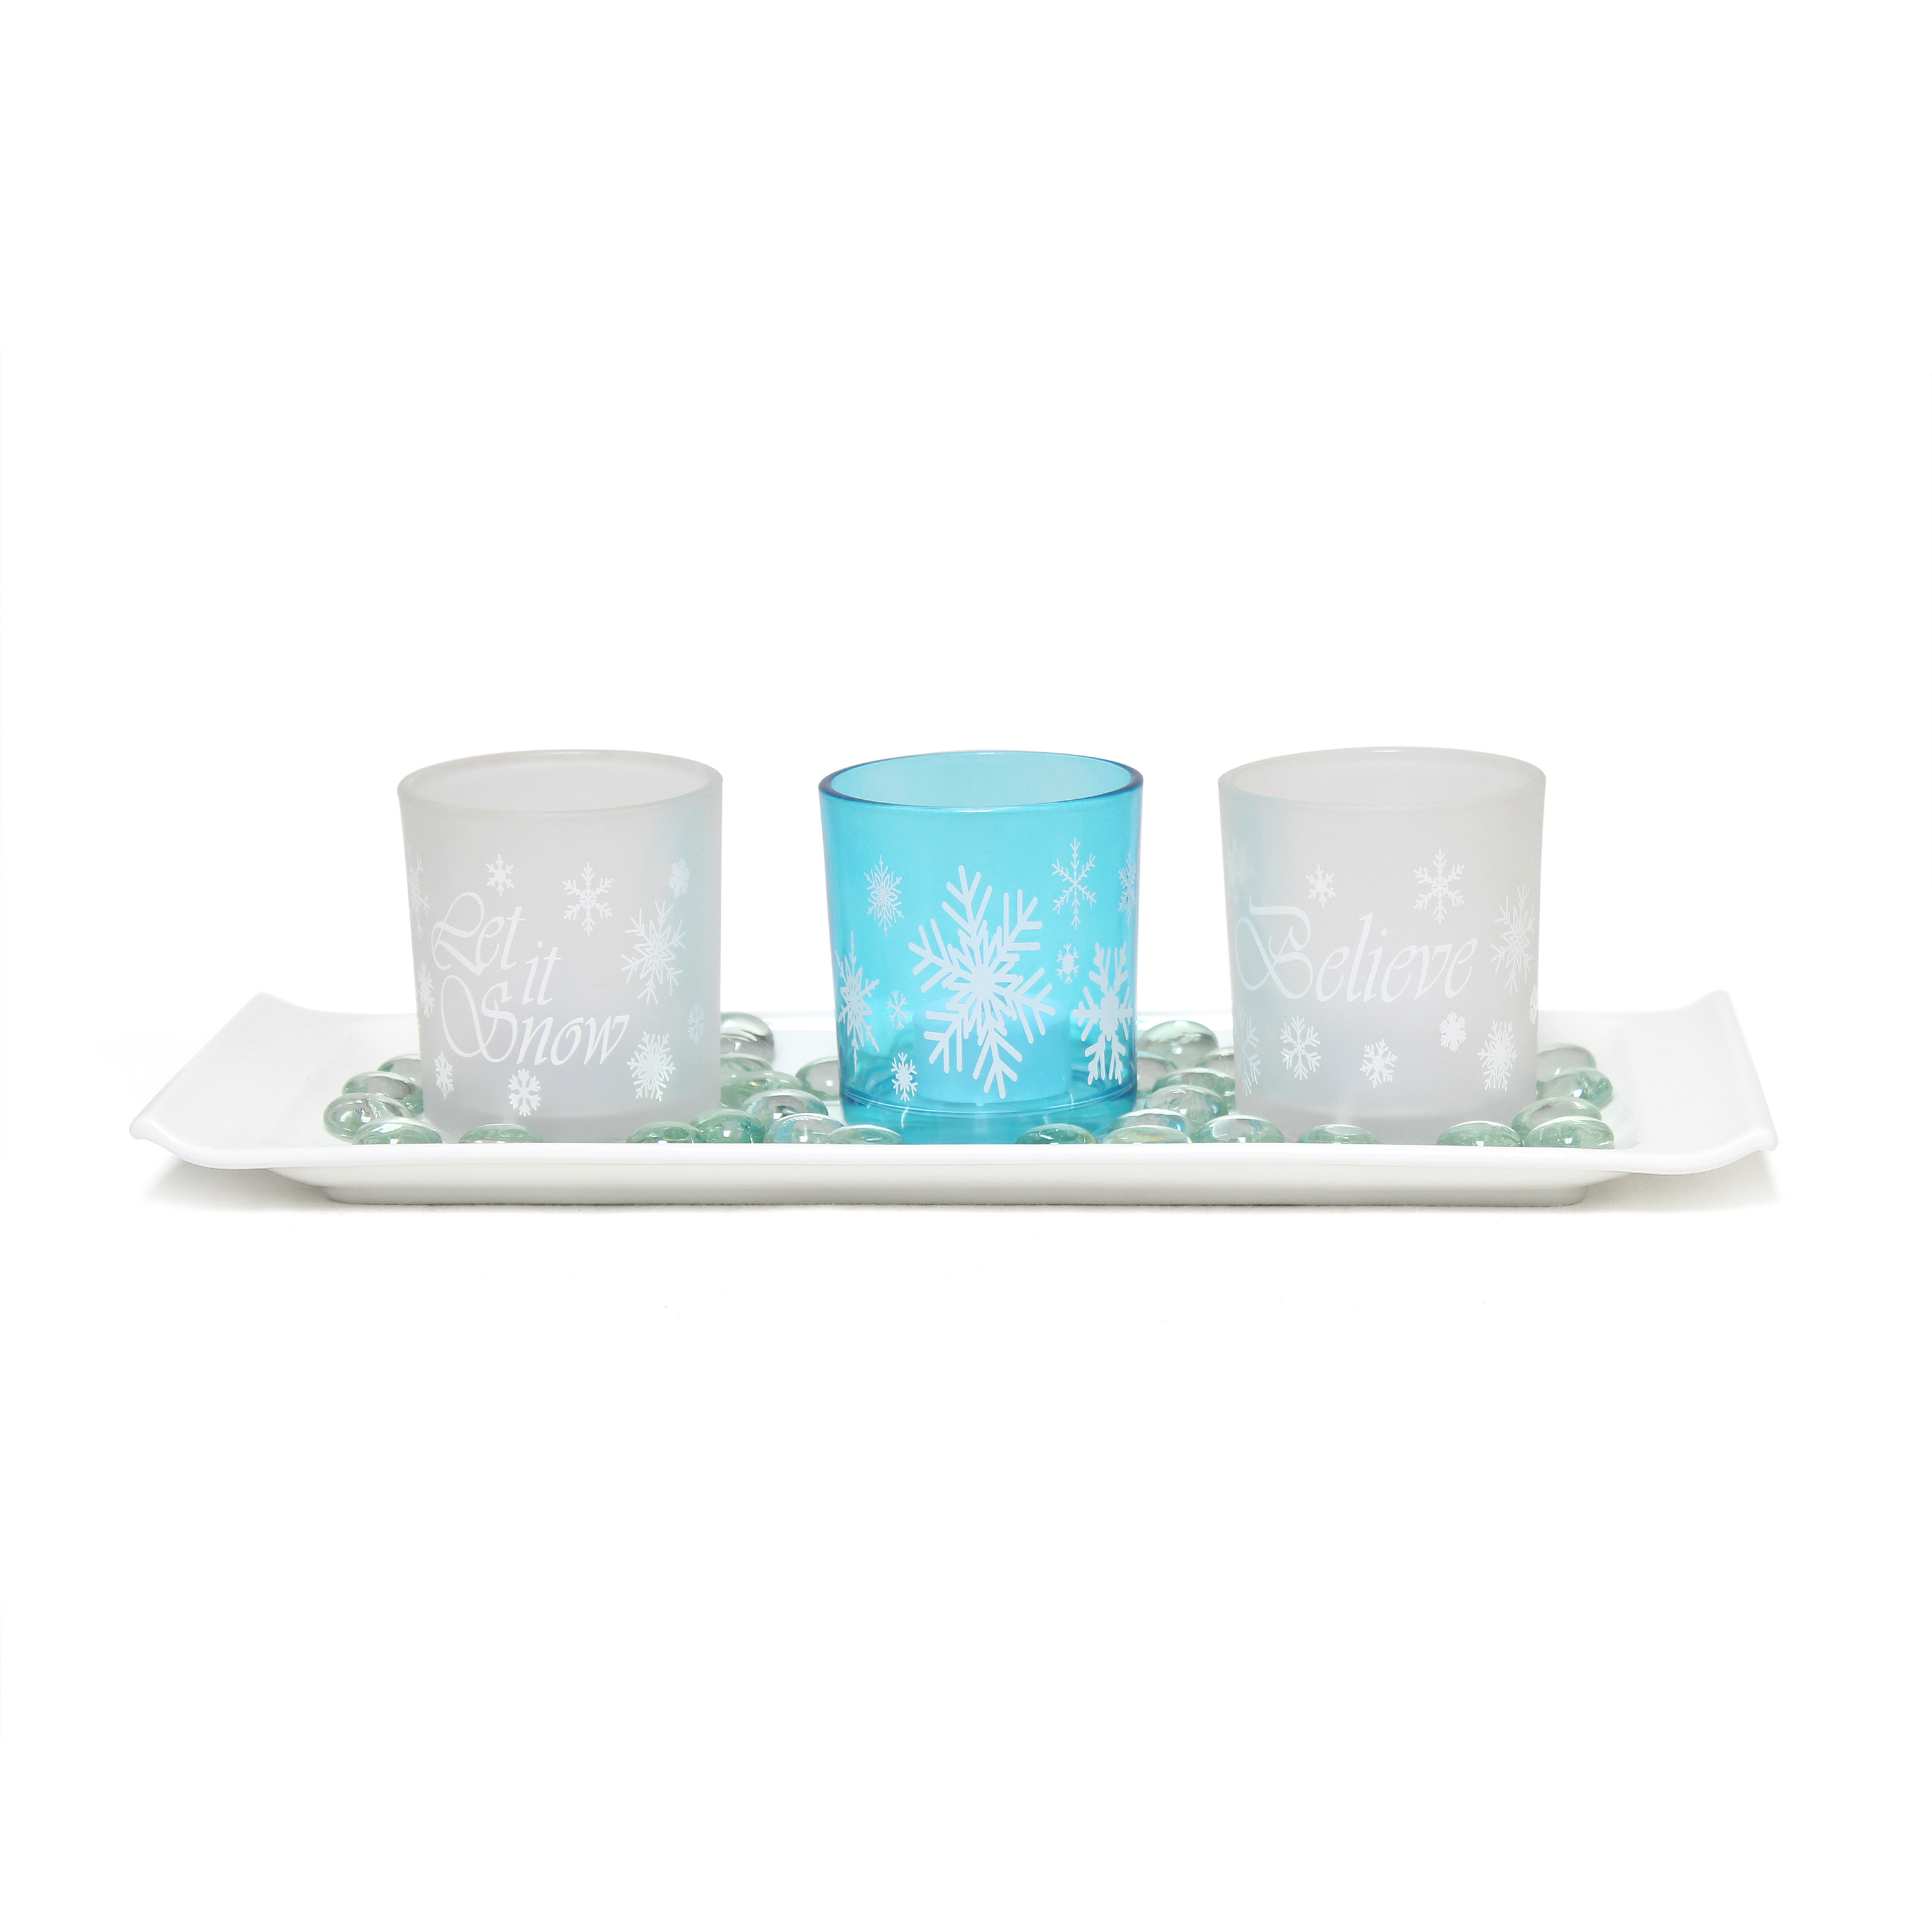 Elegant Designs Winter Wonderland Candle Set of 3, Blue Frost